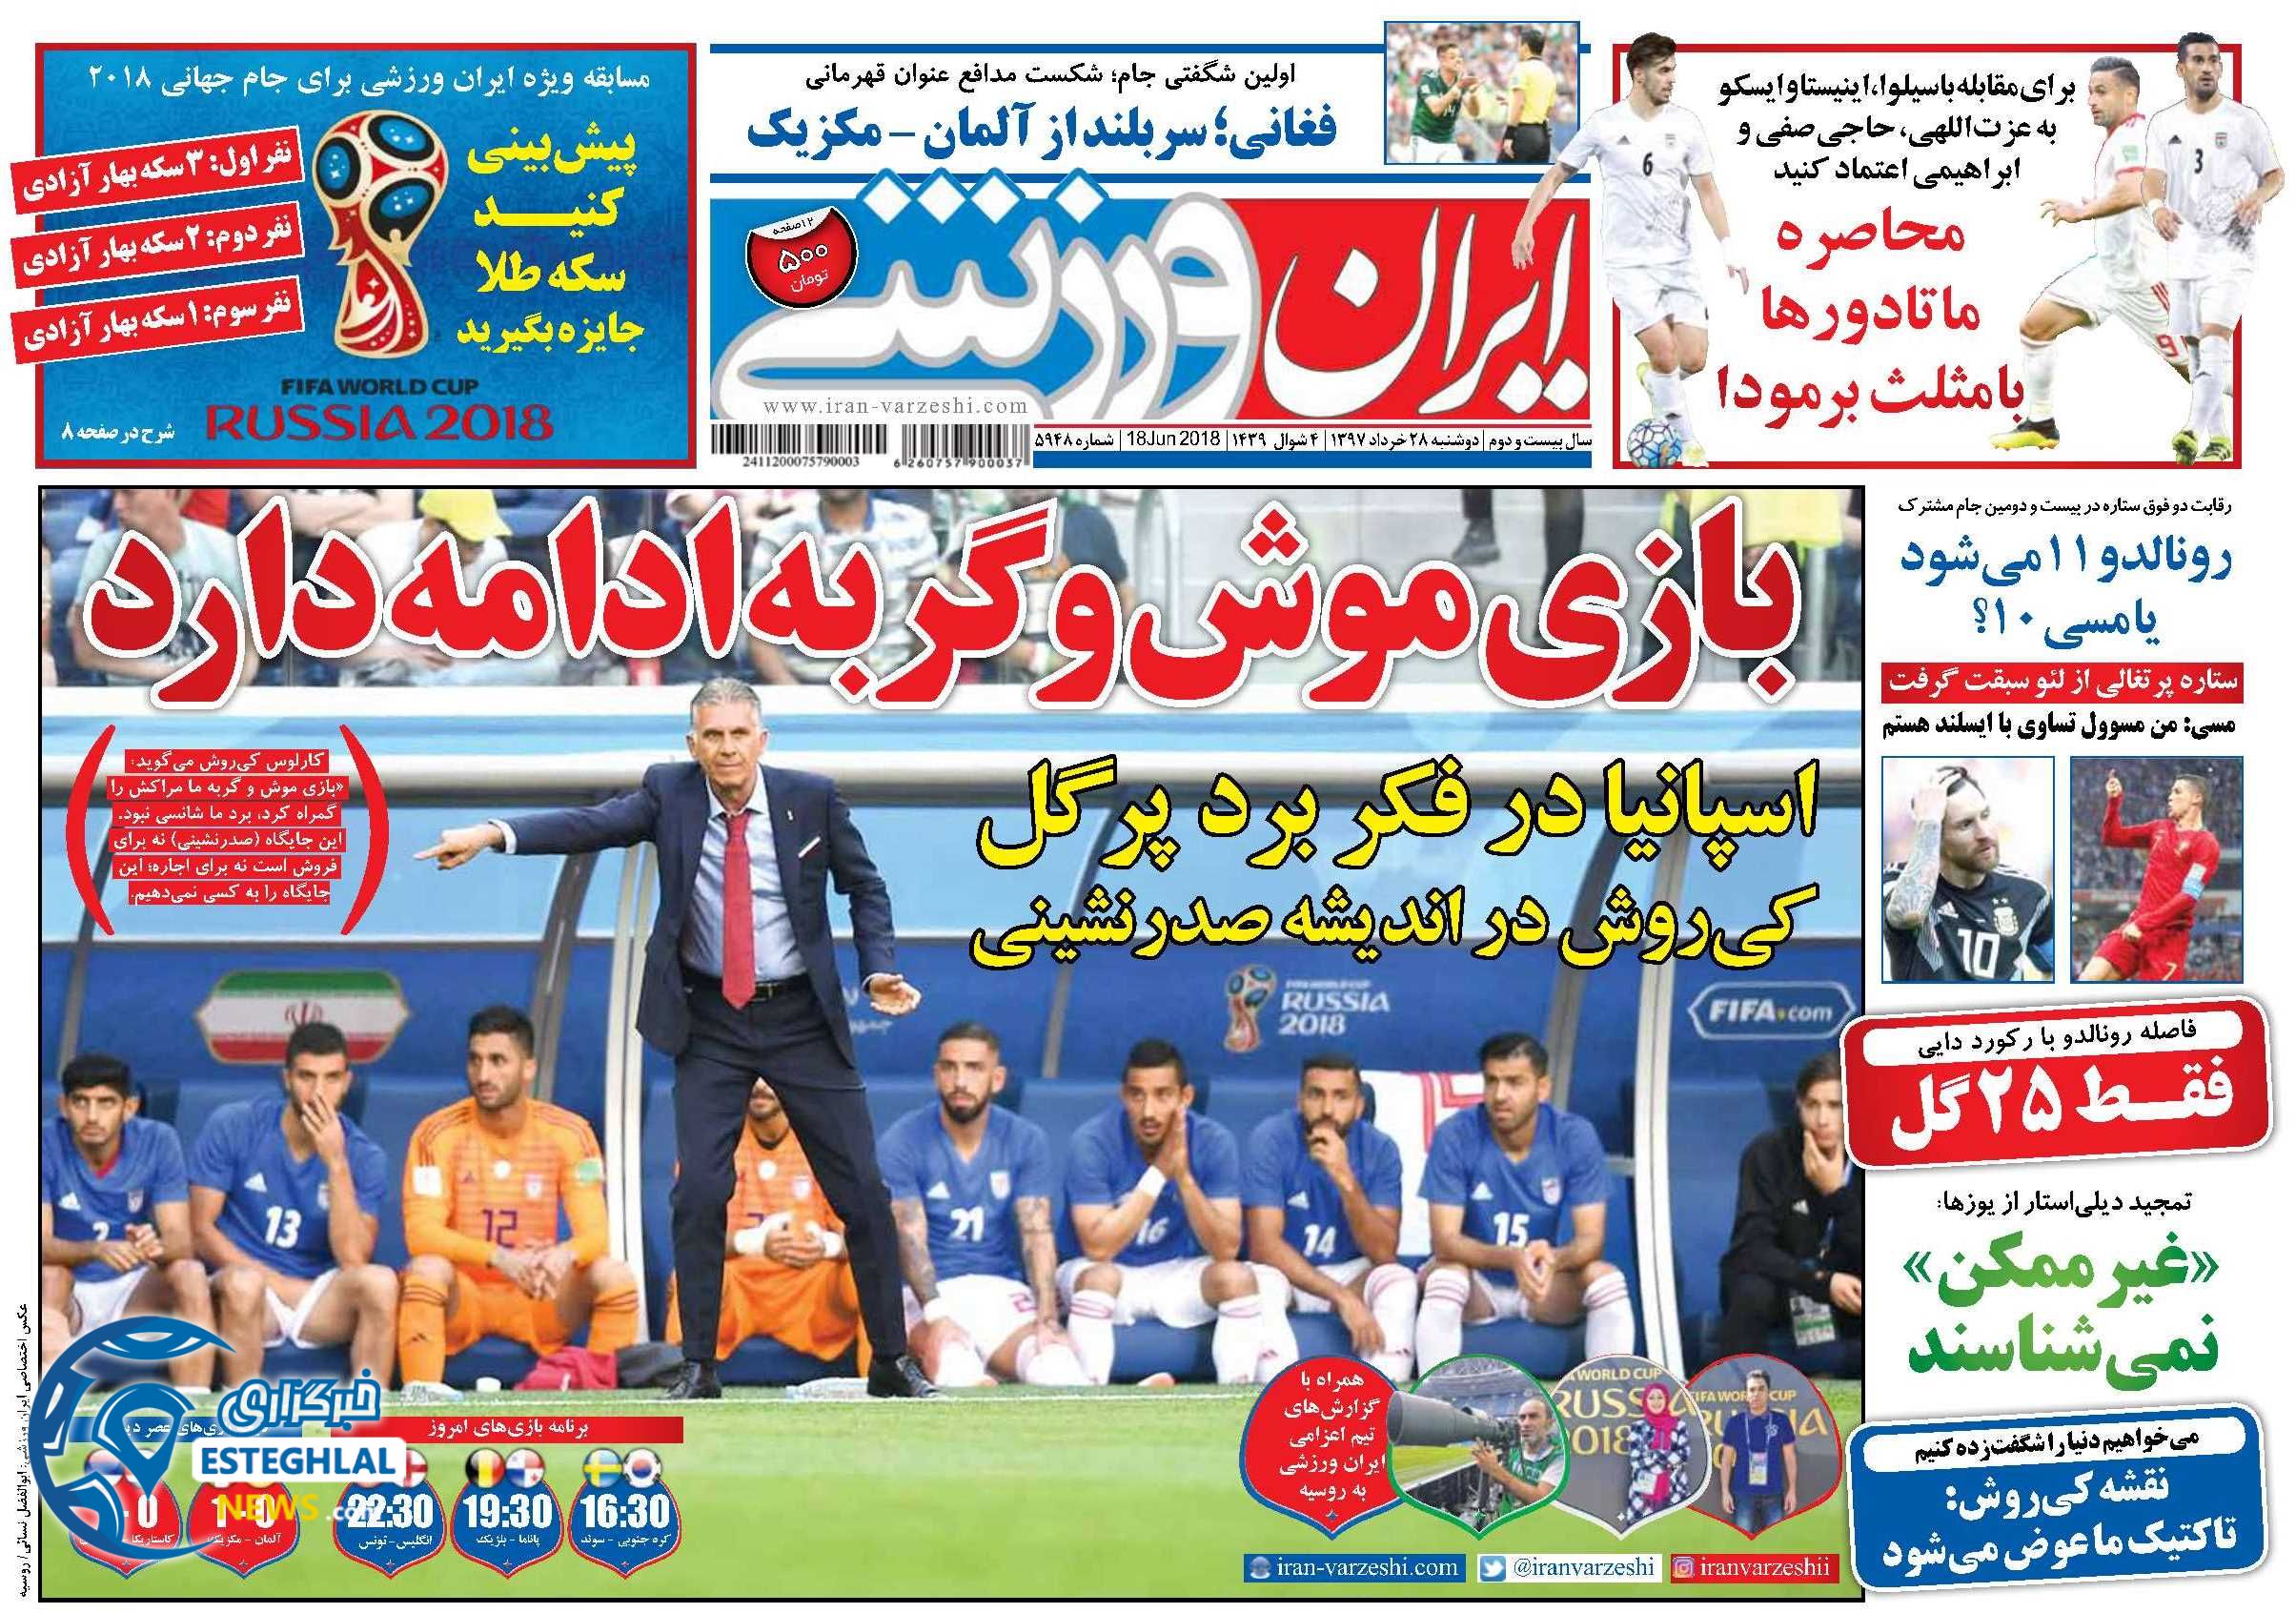   روزنامه ایران ورزشی دوشنبه 28 خرداد 1397      